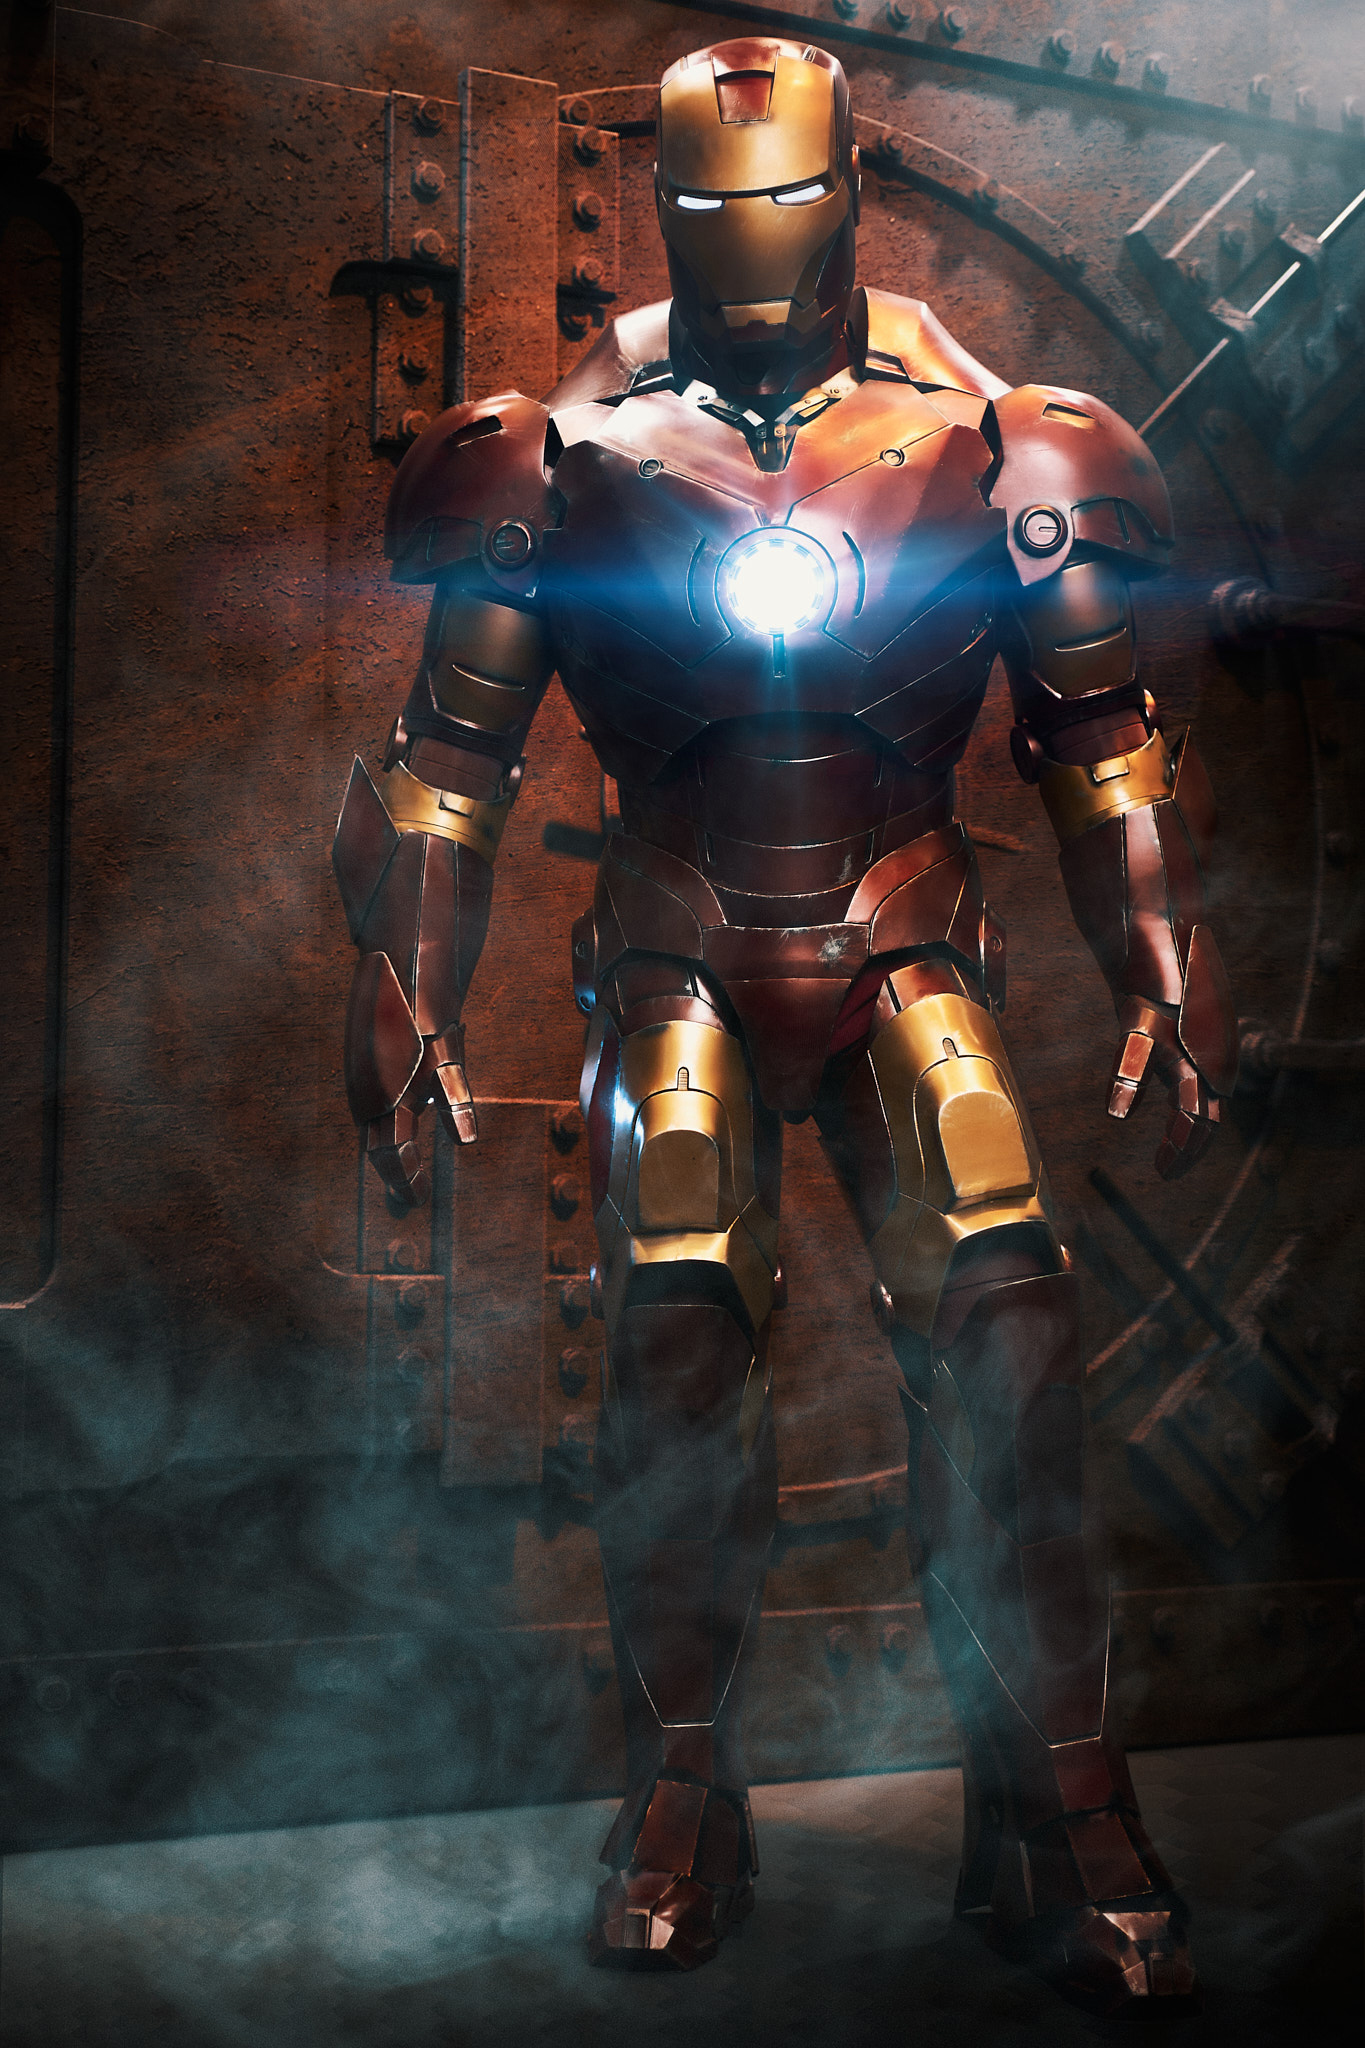 Stefan byggde sin egen Iron Man-dräkt